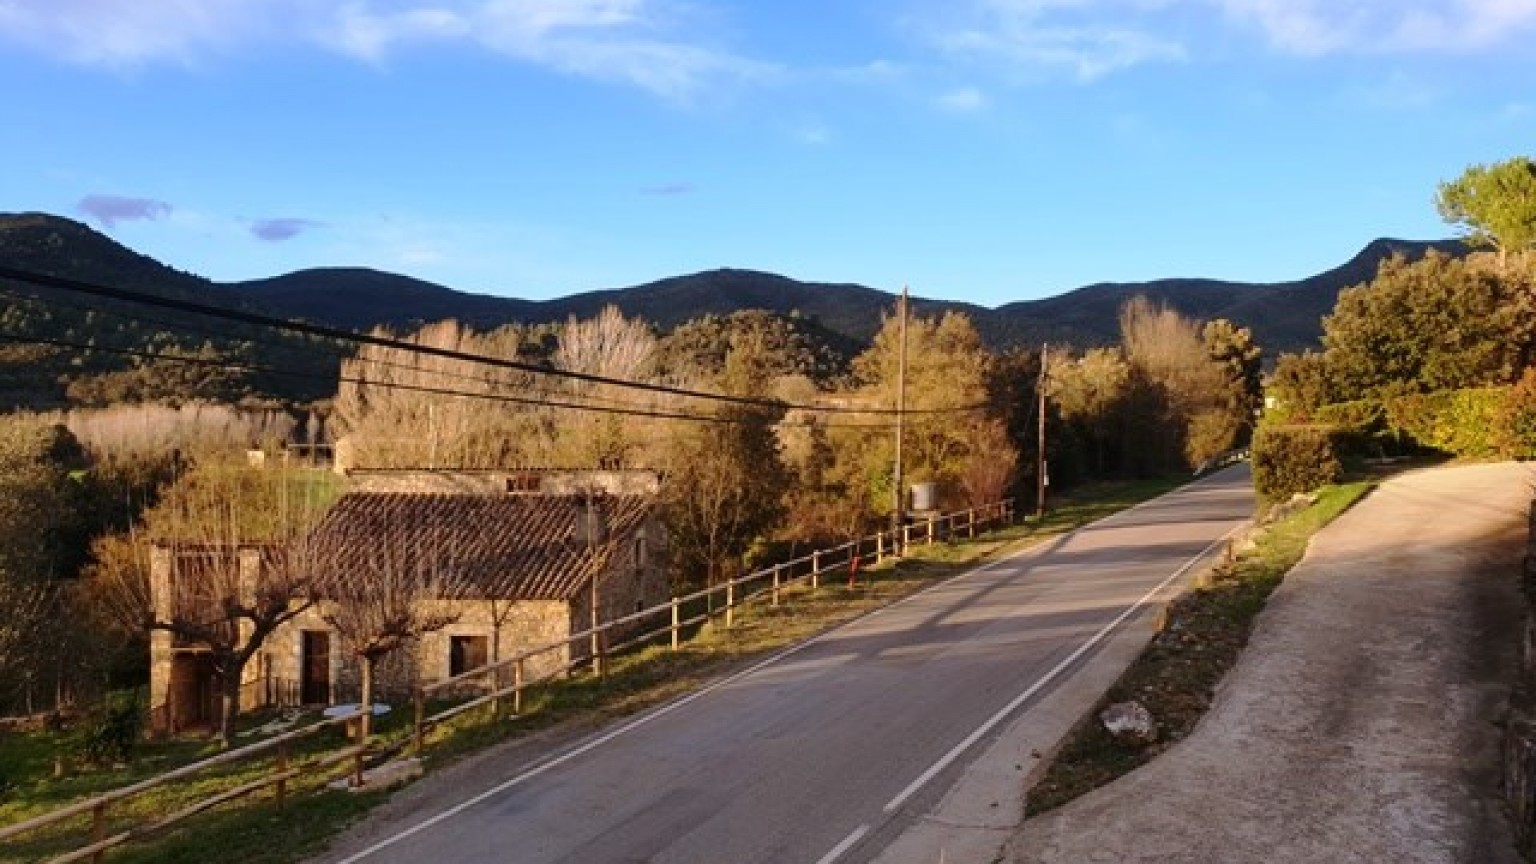 Terreno situado en la población de Sant Marti de Llemana, dispone de 1885m2, vistas espectaculares